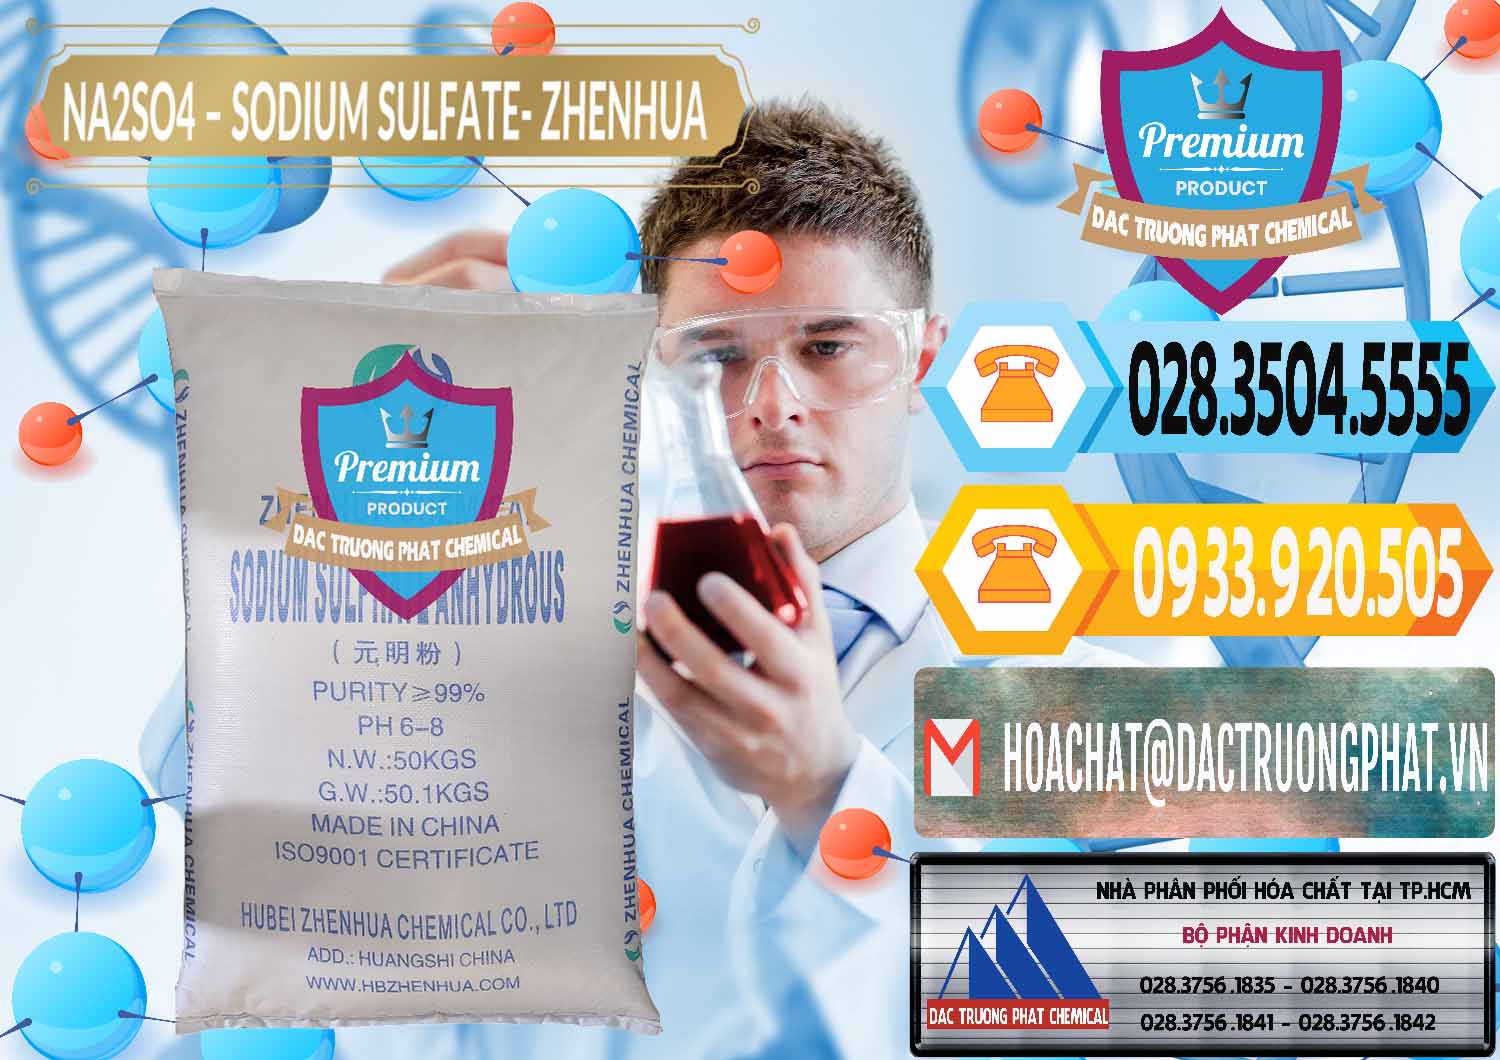 Cty cung ứng - bán Sodium Sulphate - Muối Sunfat Na2SO4 Zhenhua Trung Quốc China - 0101 - Công ty chuyên kinh doanh ( phân phối ) hóa chất tại TP.HCM - hoachattayrua.net